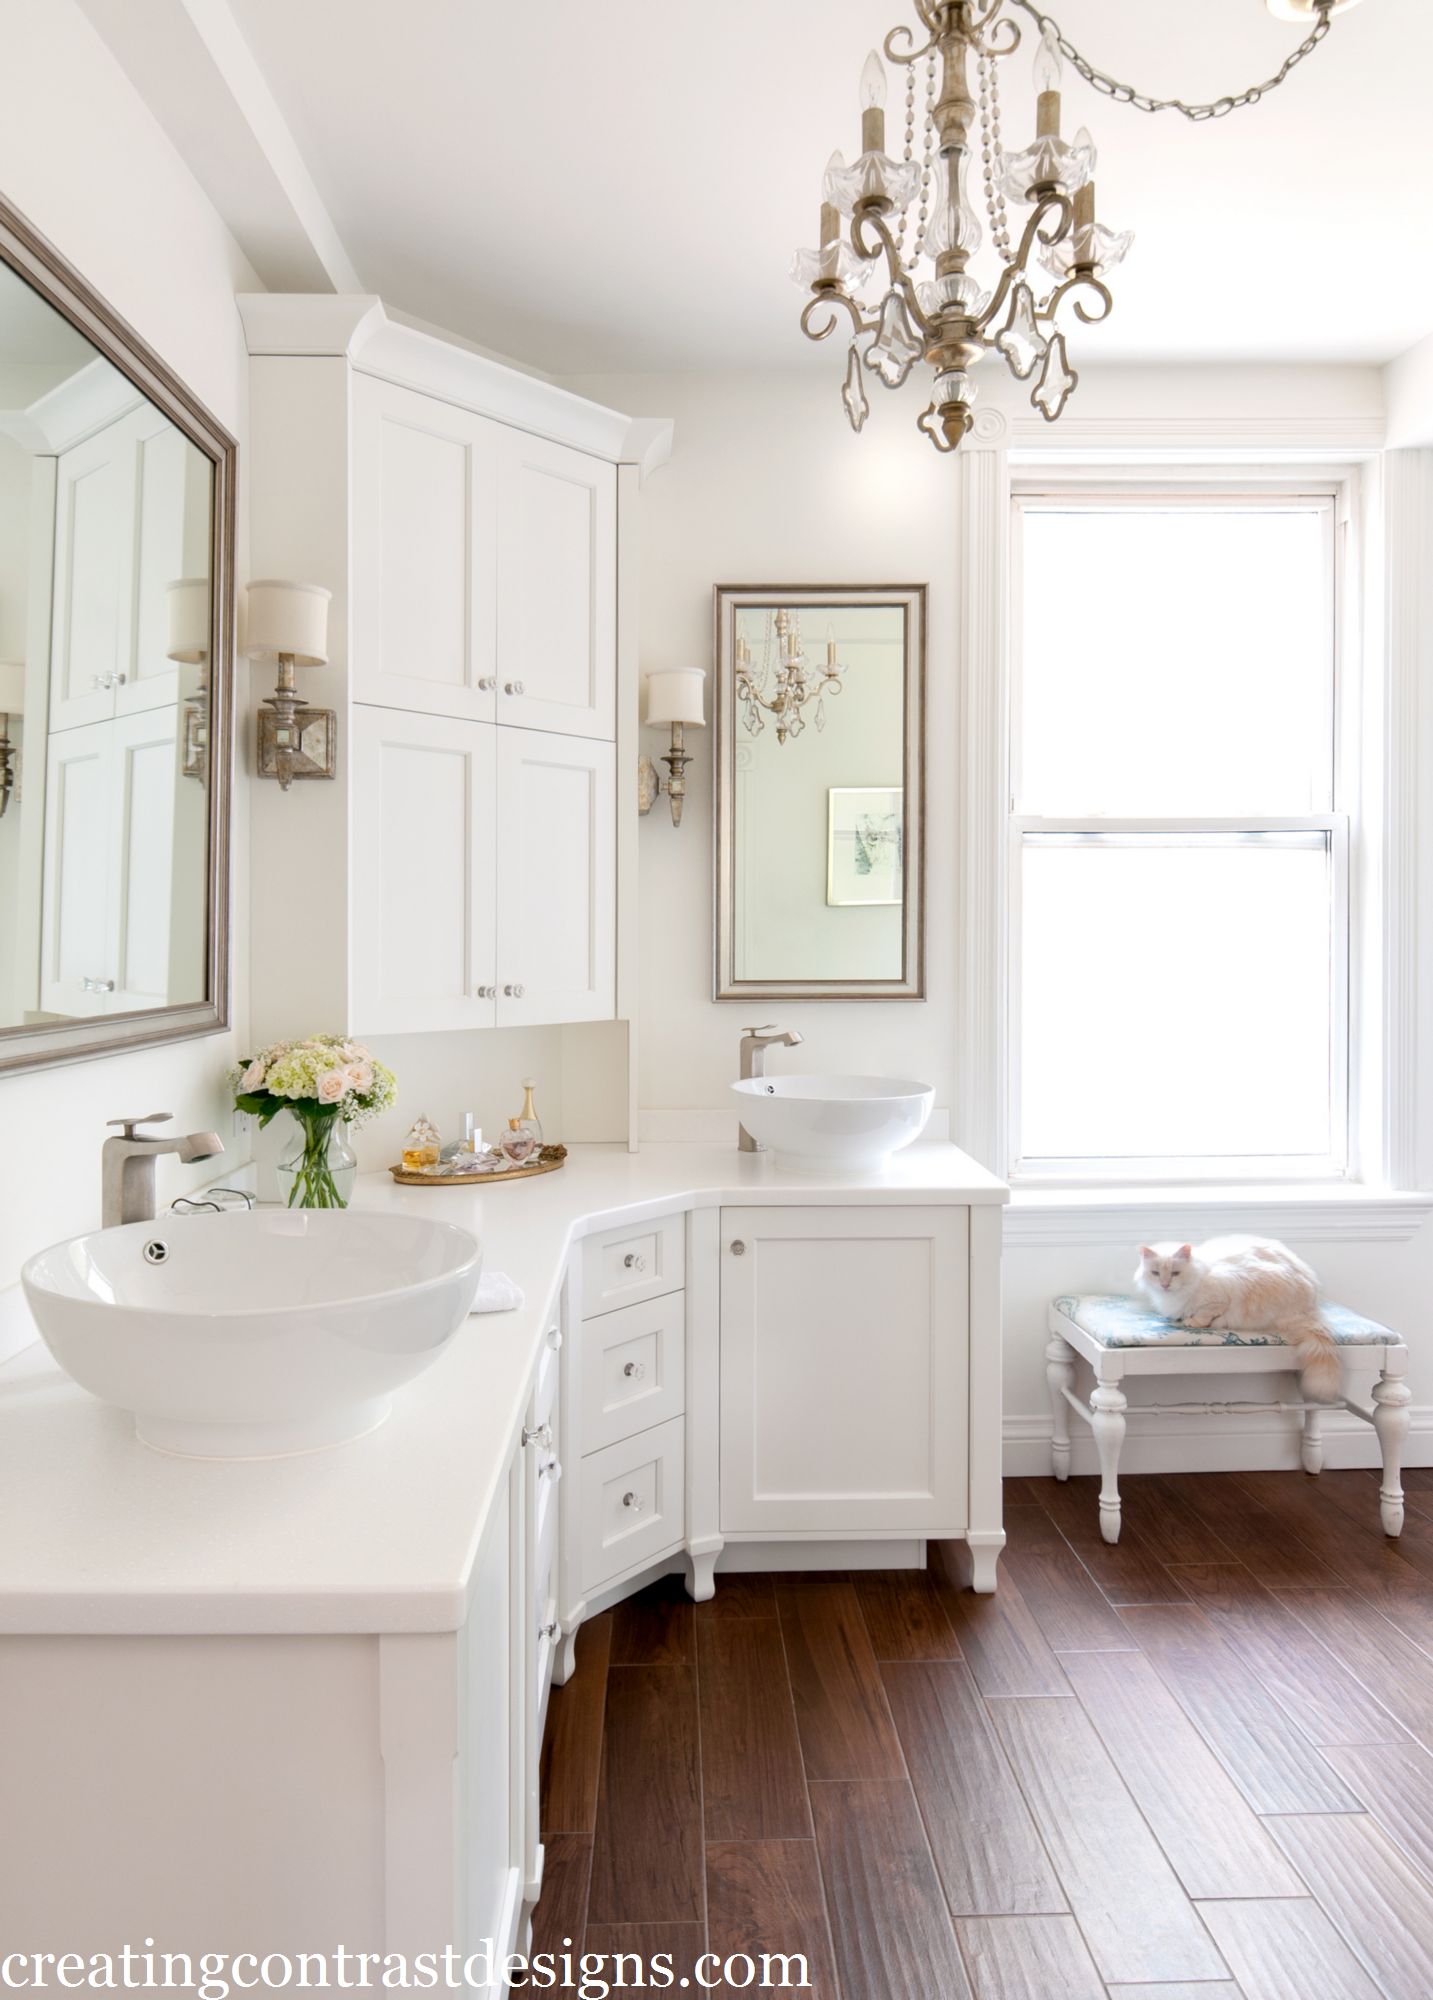 Bathroom Renovation – Our most Elegant design yet!